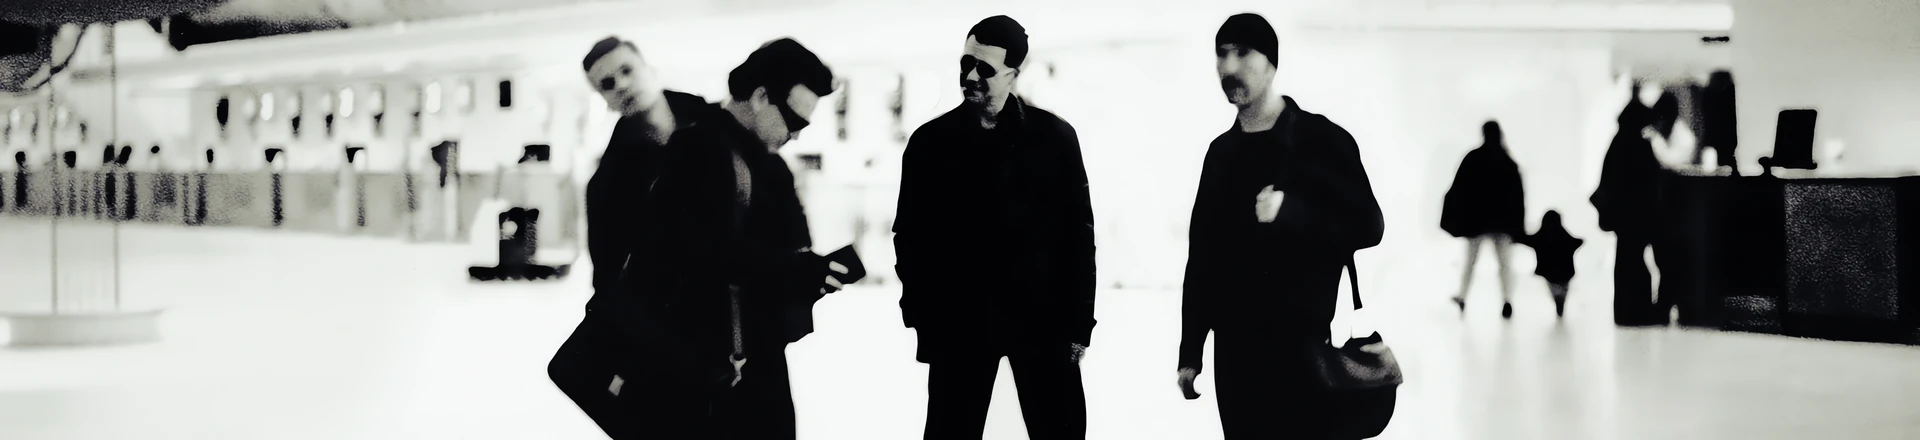 U2 świętuje 20-lecie kultowego albumu